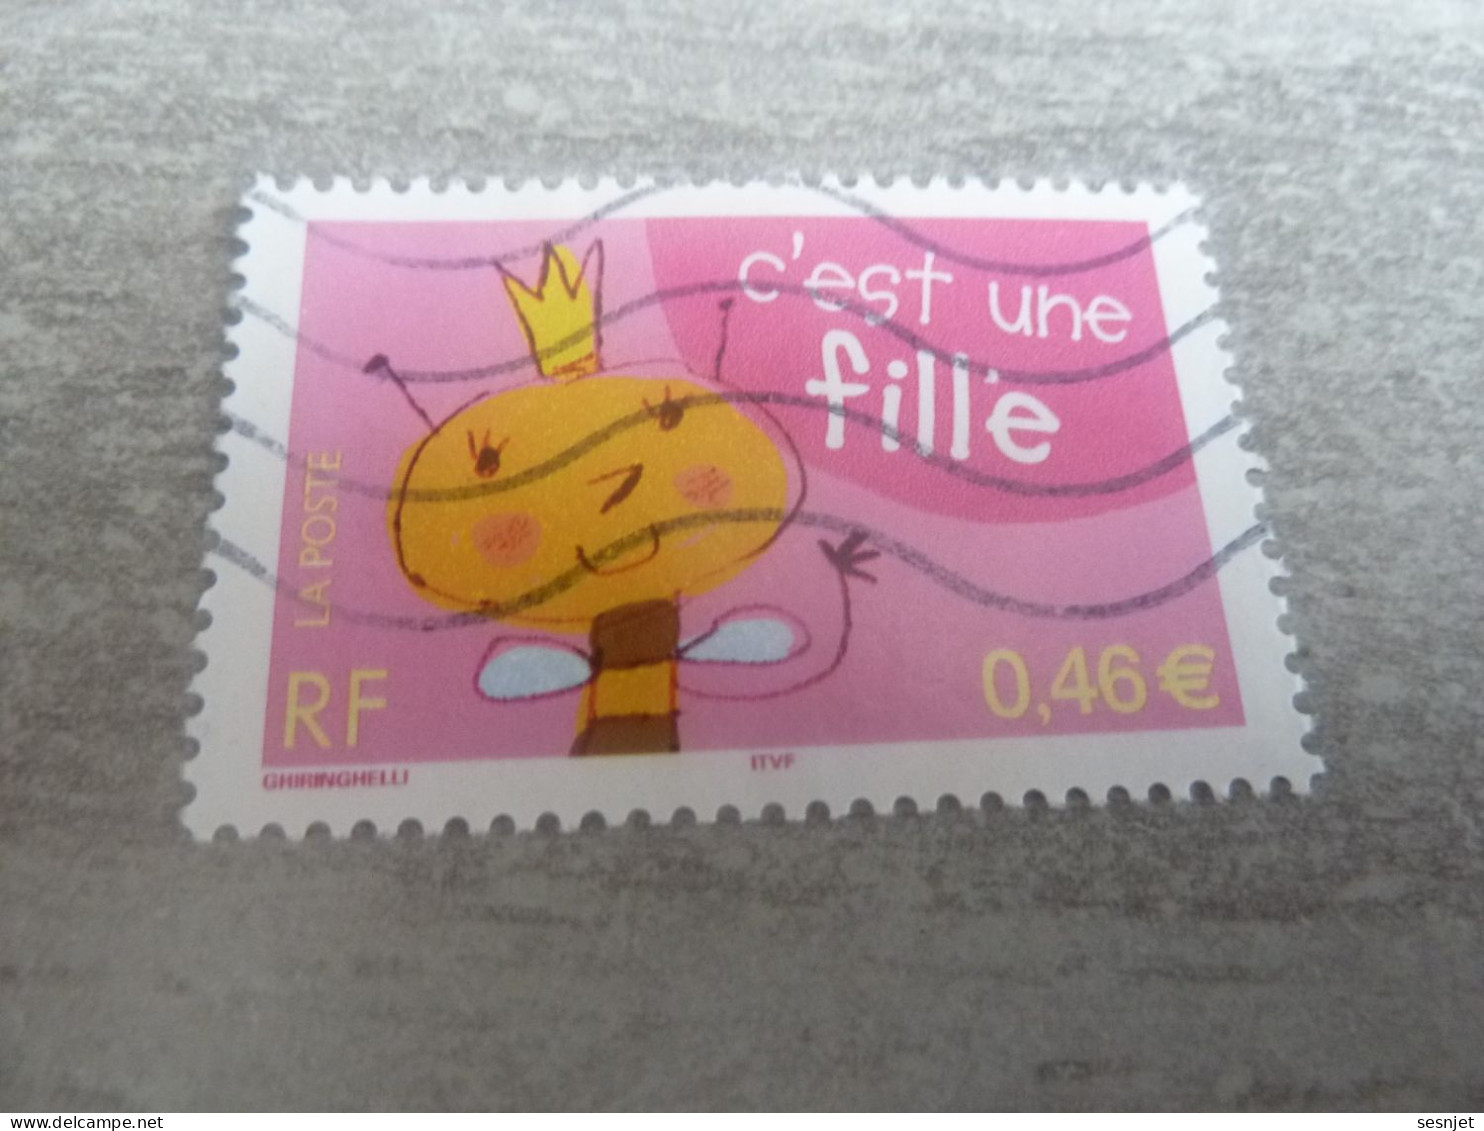 Naissance - C'est Une Fille - 0.46 € - Yt 3463 - Multicolore - Oblitéré - Année 2002 - - Used Stamps